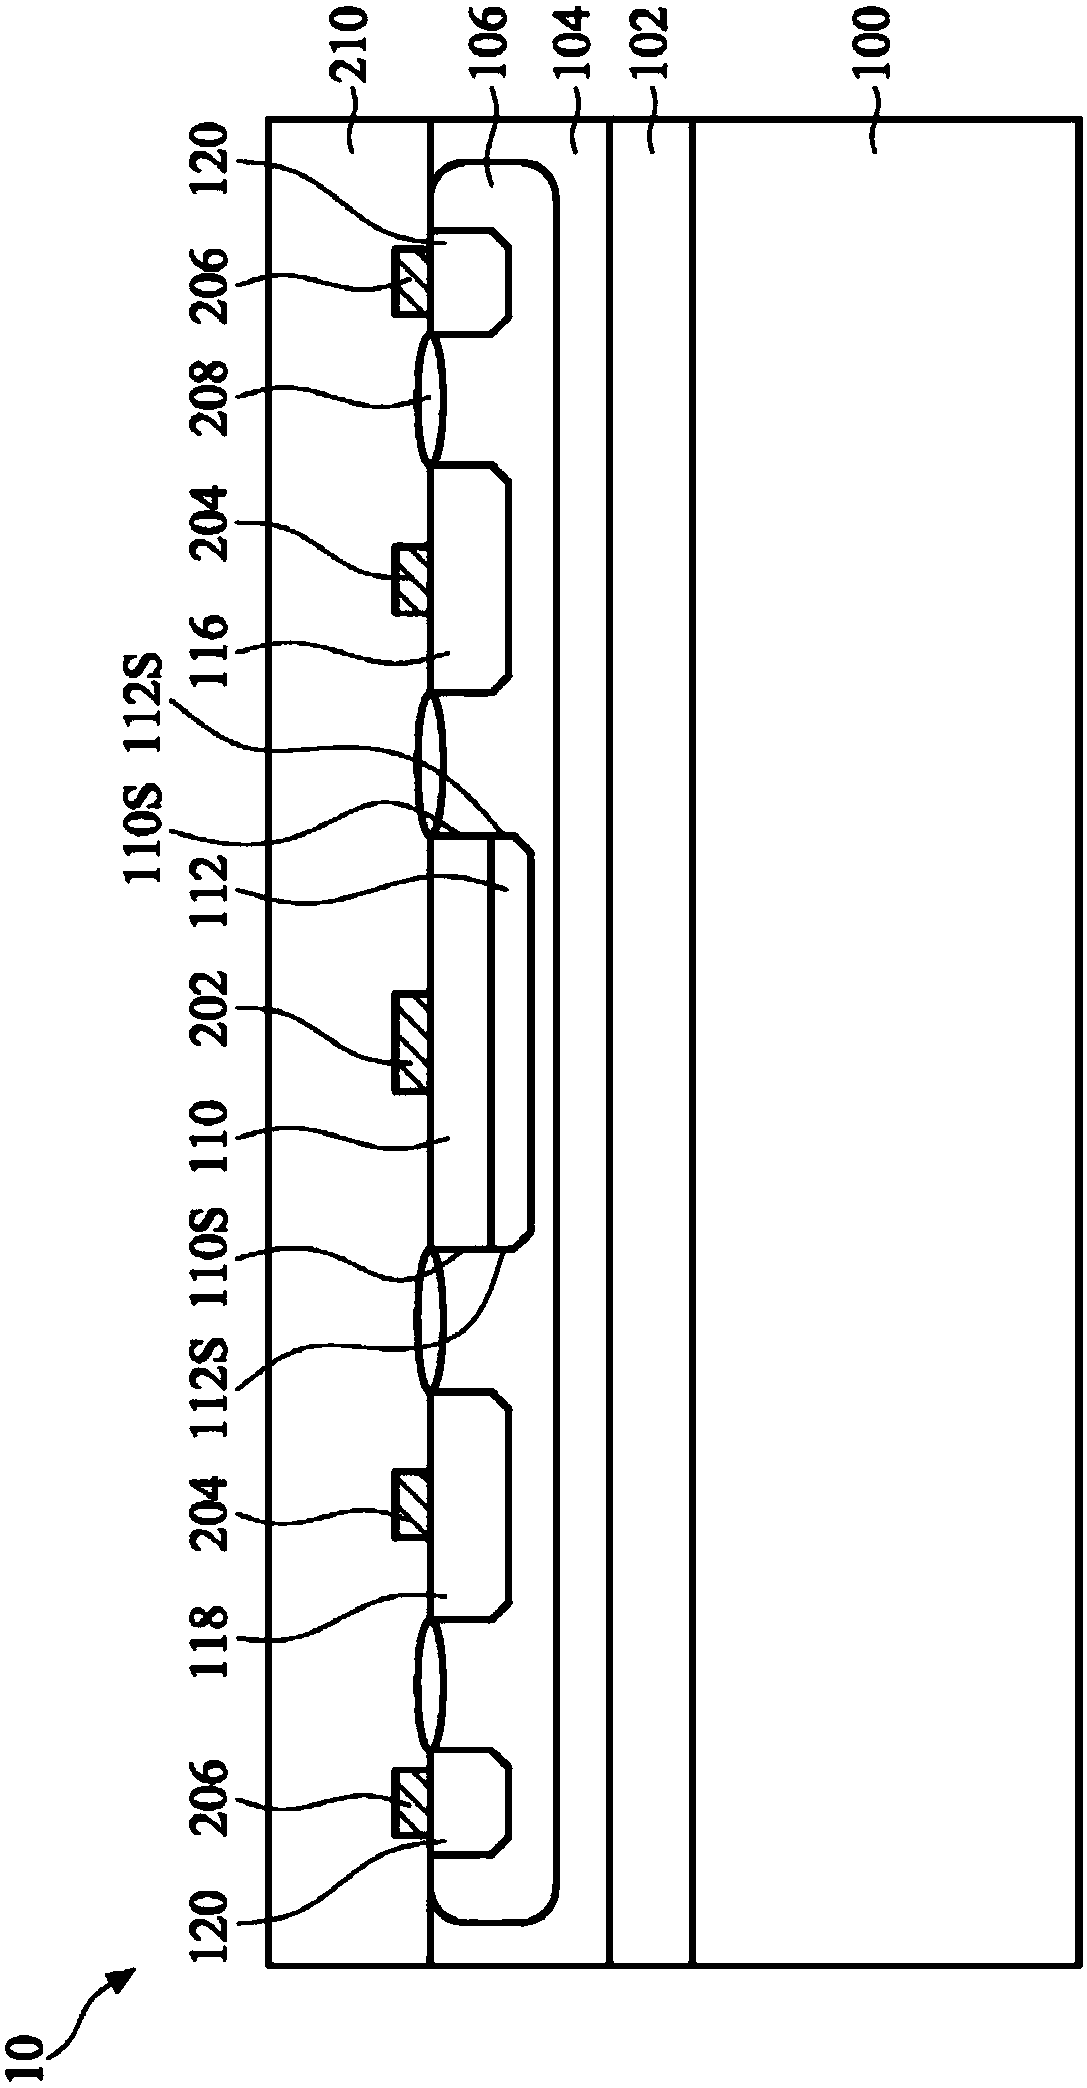 Transient voltage suppression device